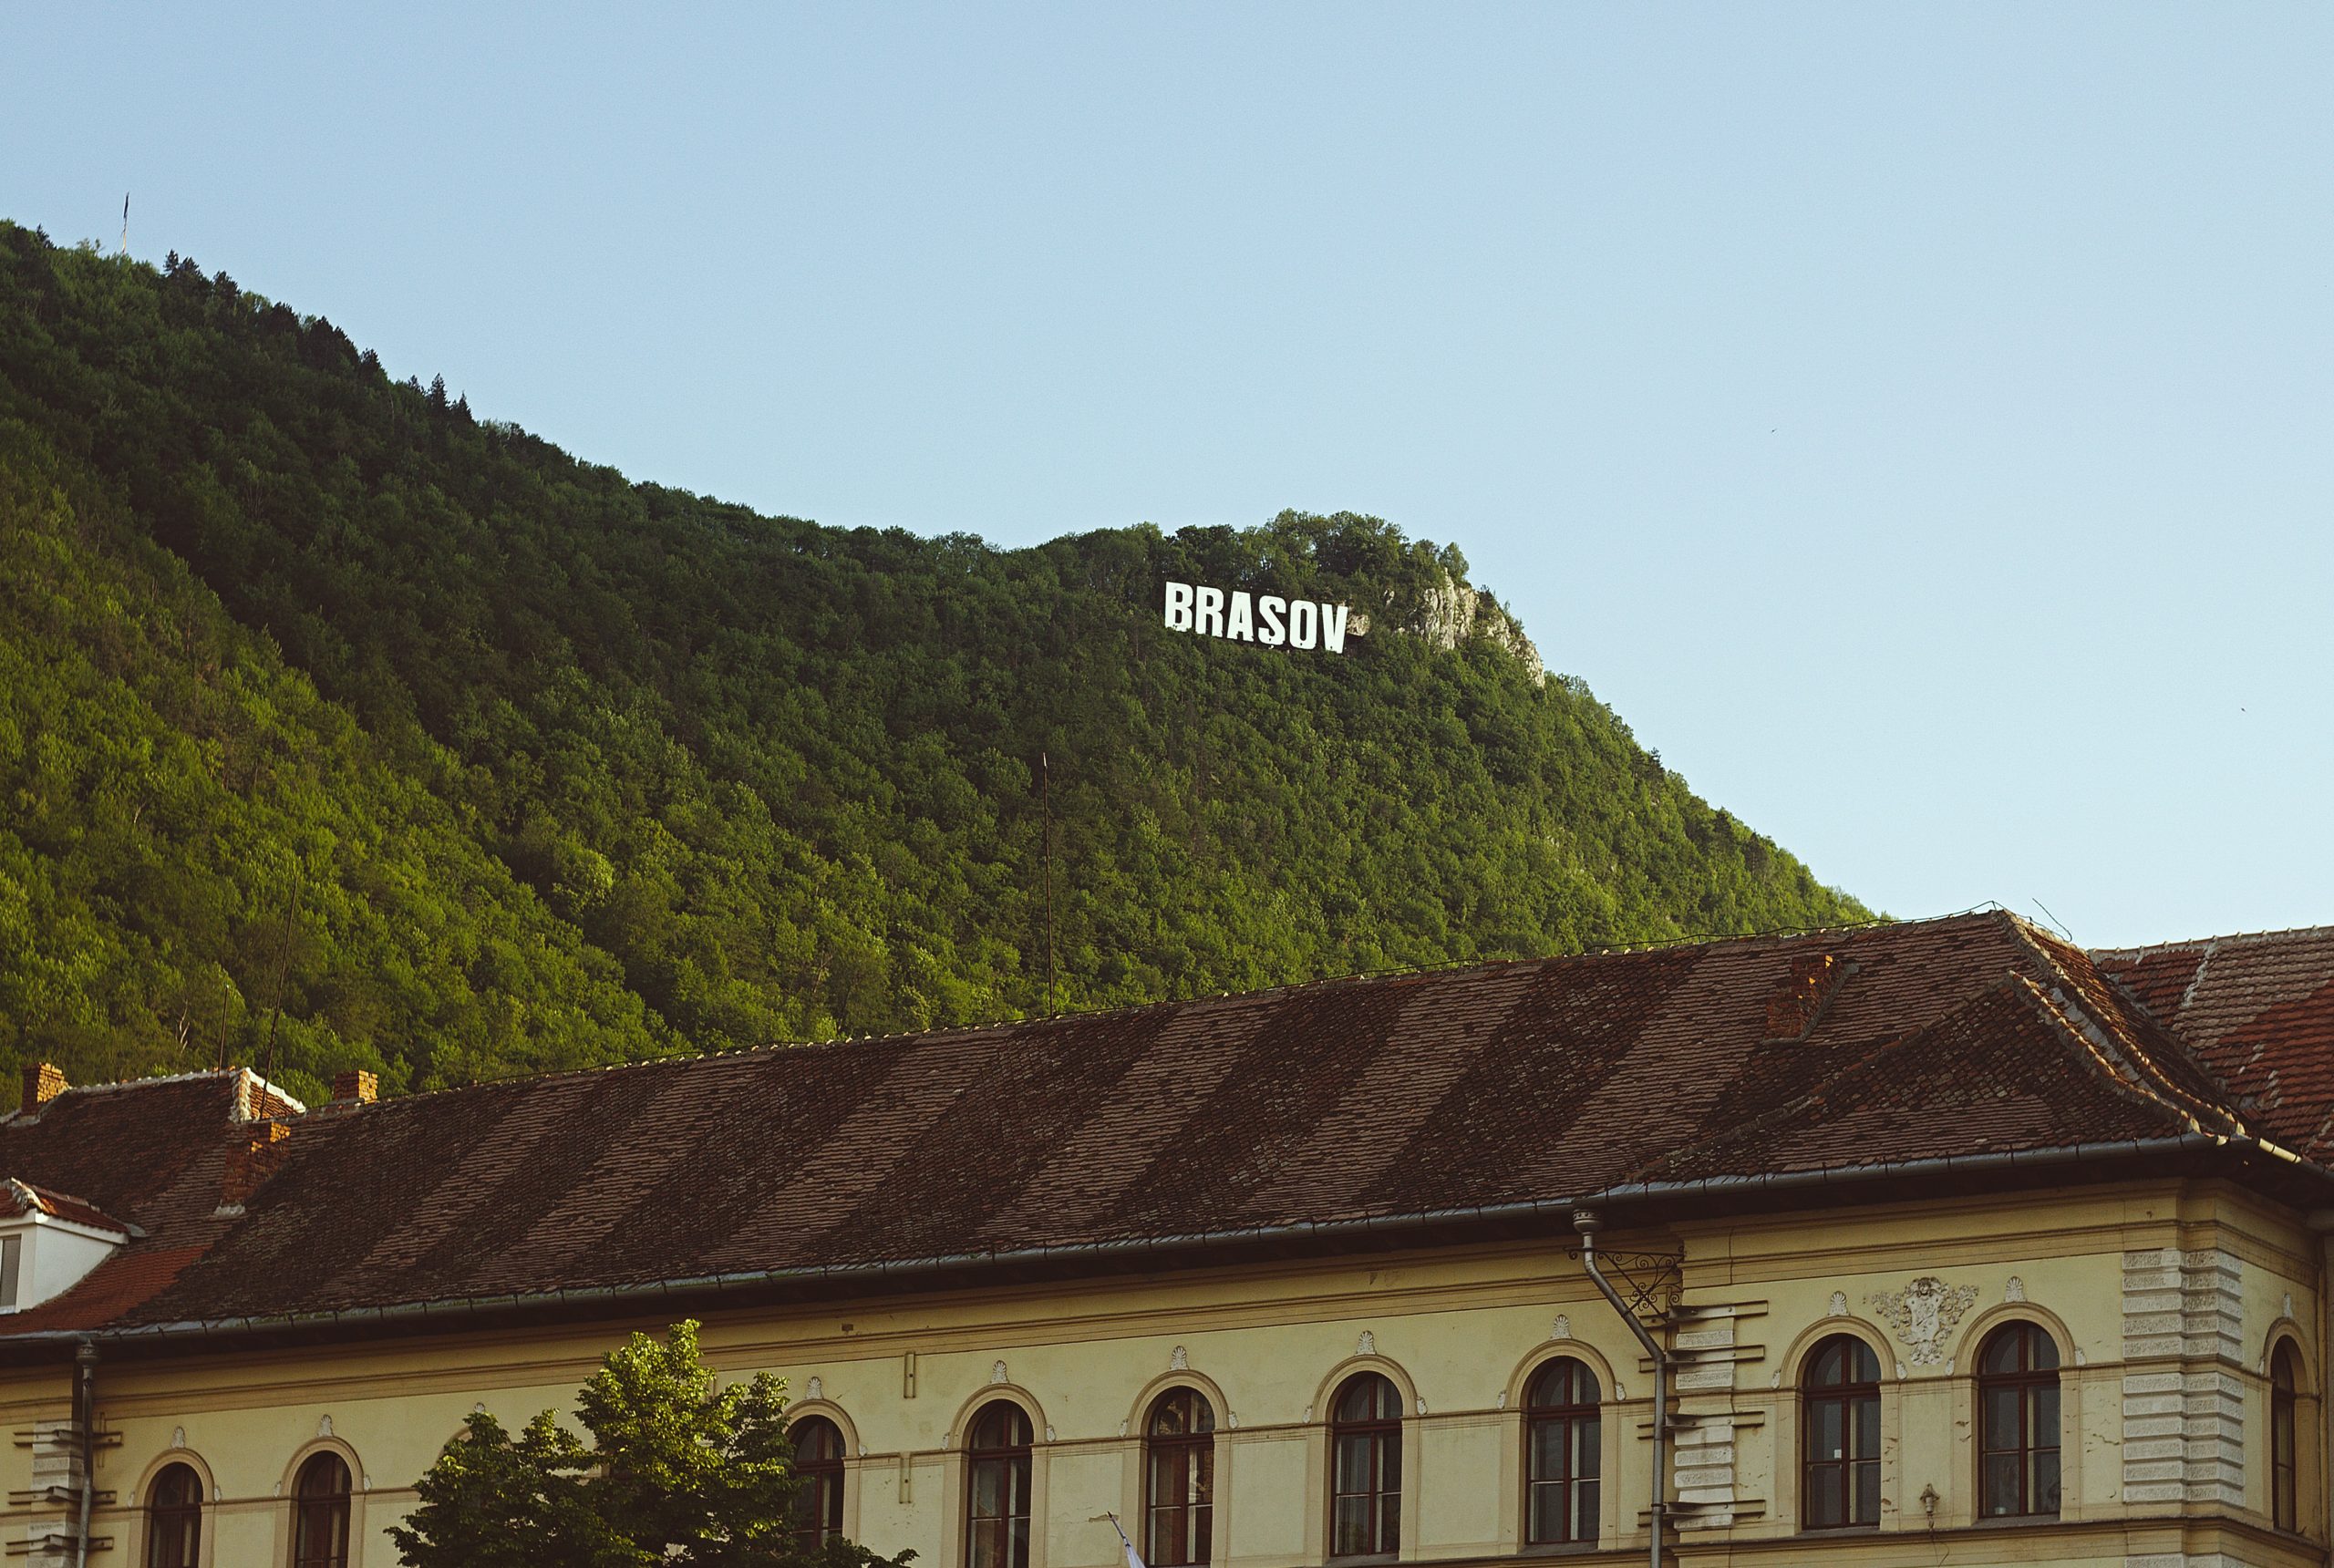 Hike to the Brasov sign in Brasov Romania